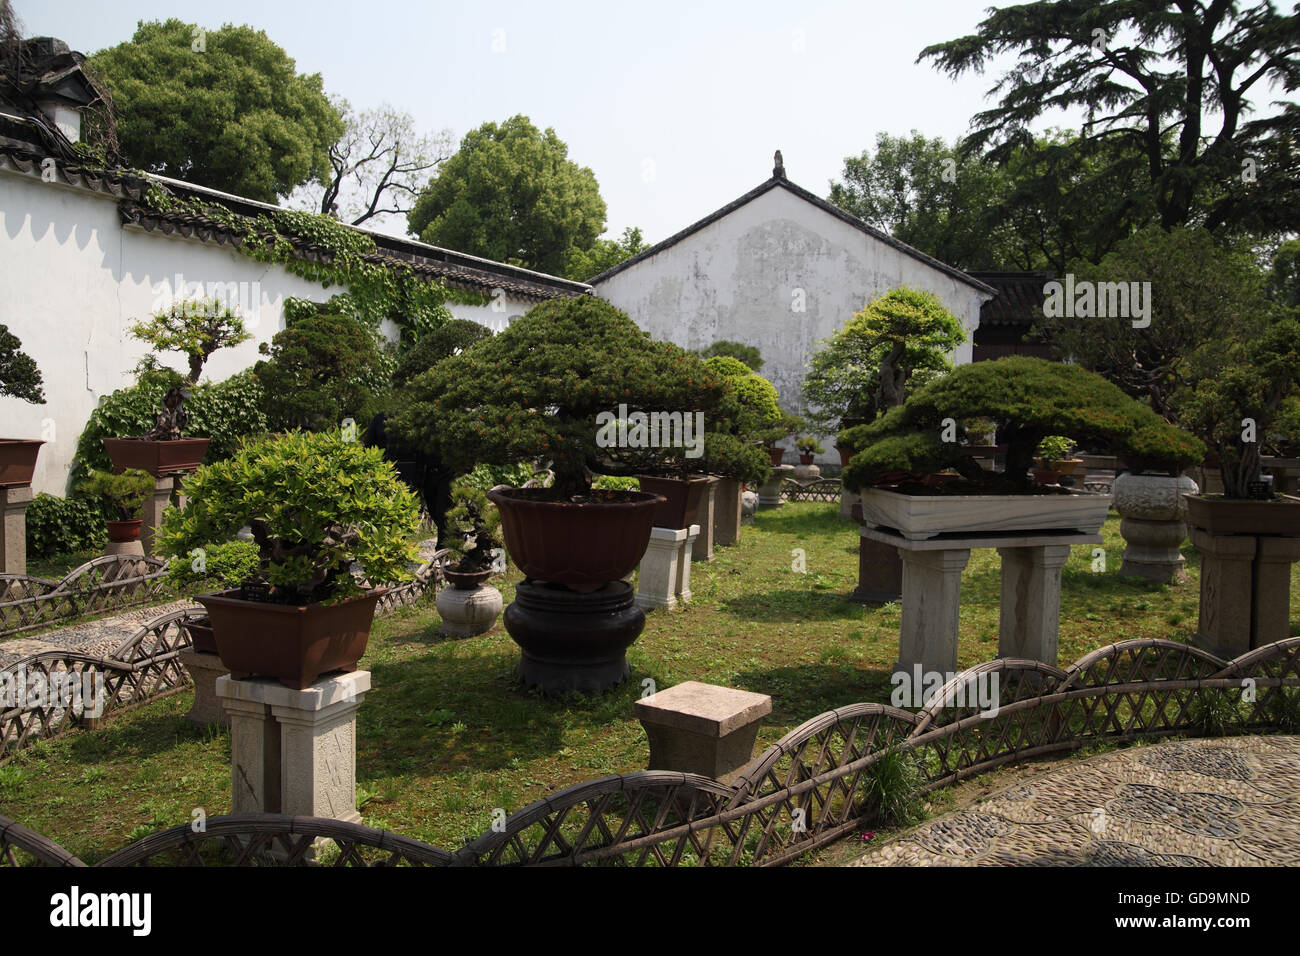 Les petites usines chinoises d'élevage dans l'Humble Administrator's Garden, un jardin chinois typique construit au 16e siècle. Suzhou. Banque D'Images